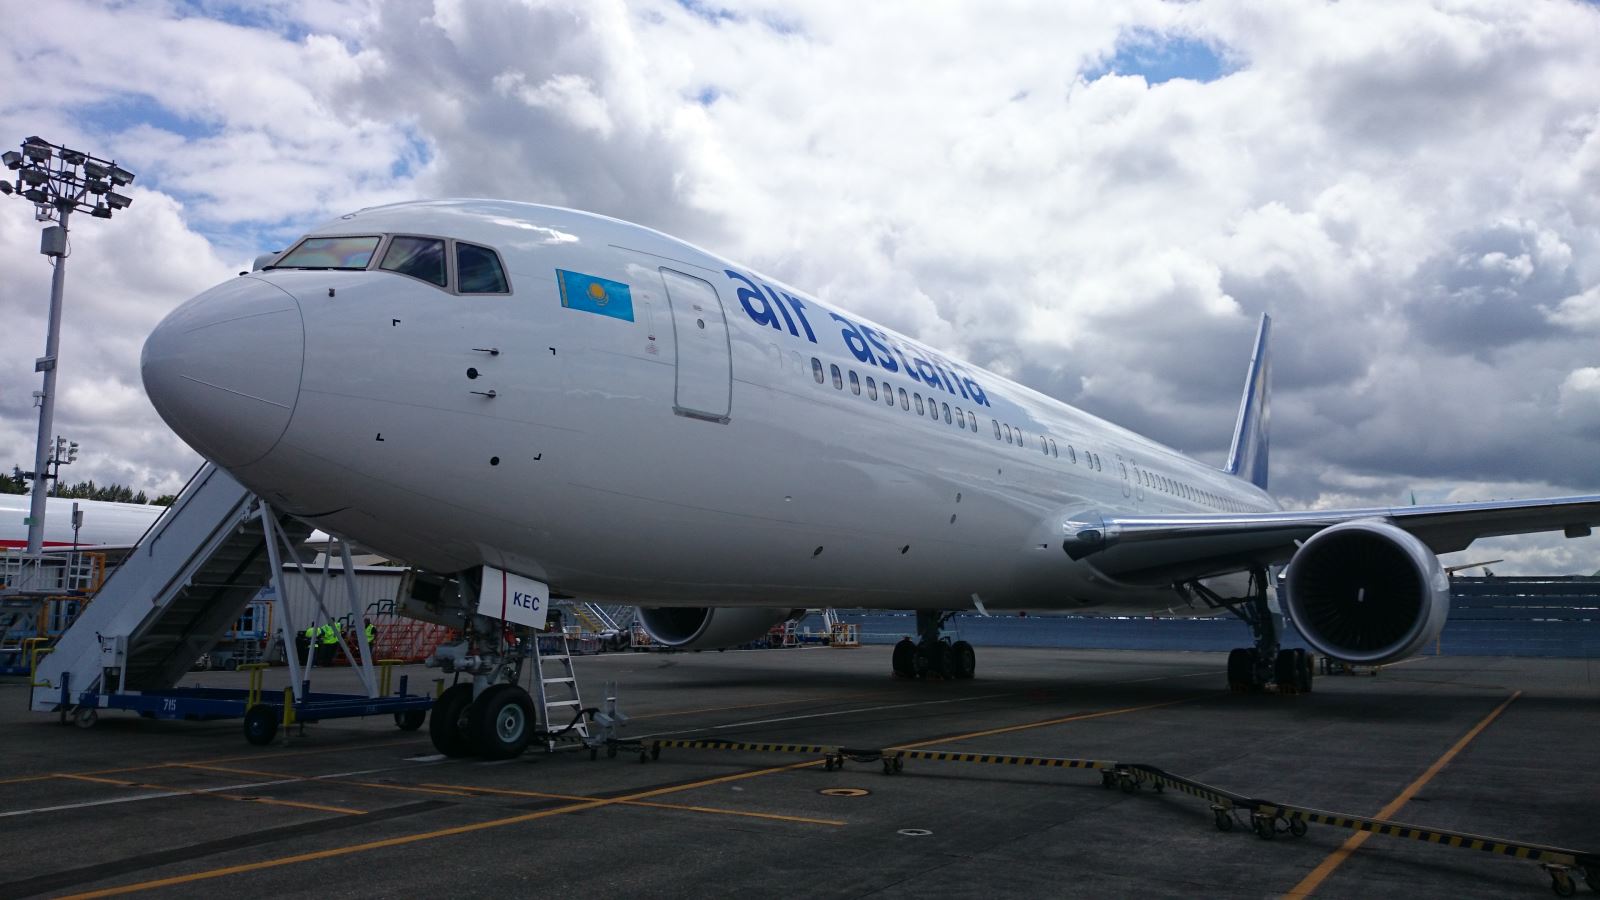 Сегодня флот «Эйр Астаны» пополнился новым собственным воздушным судном Boeing-767.